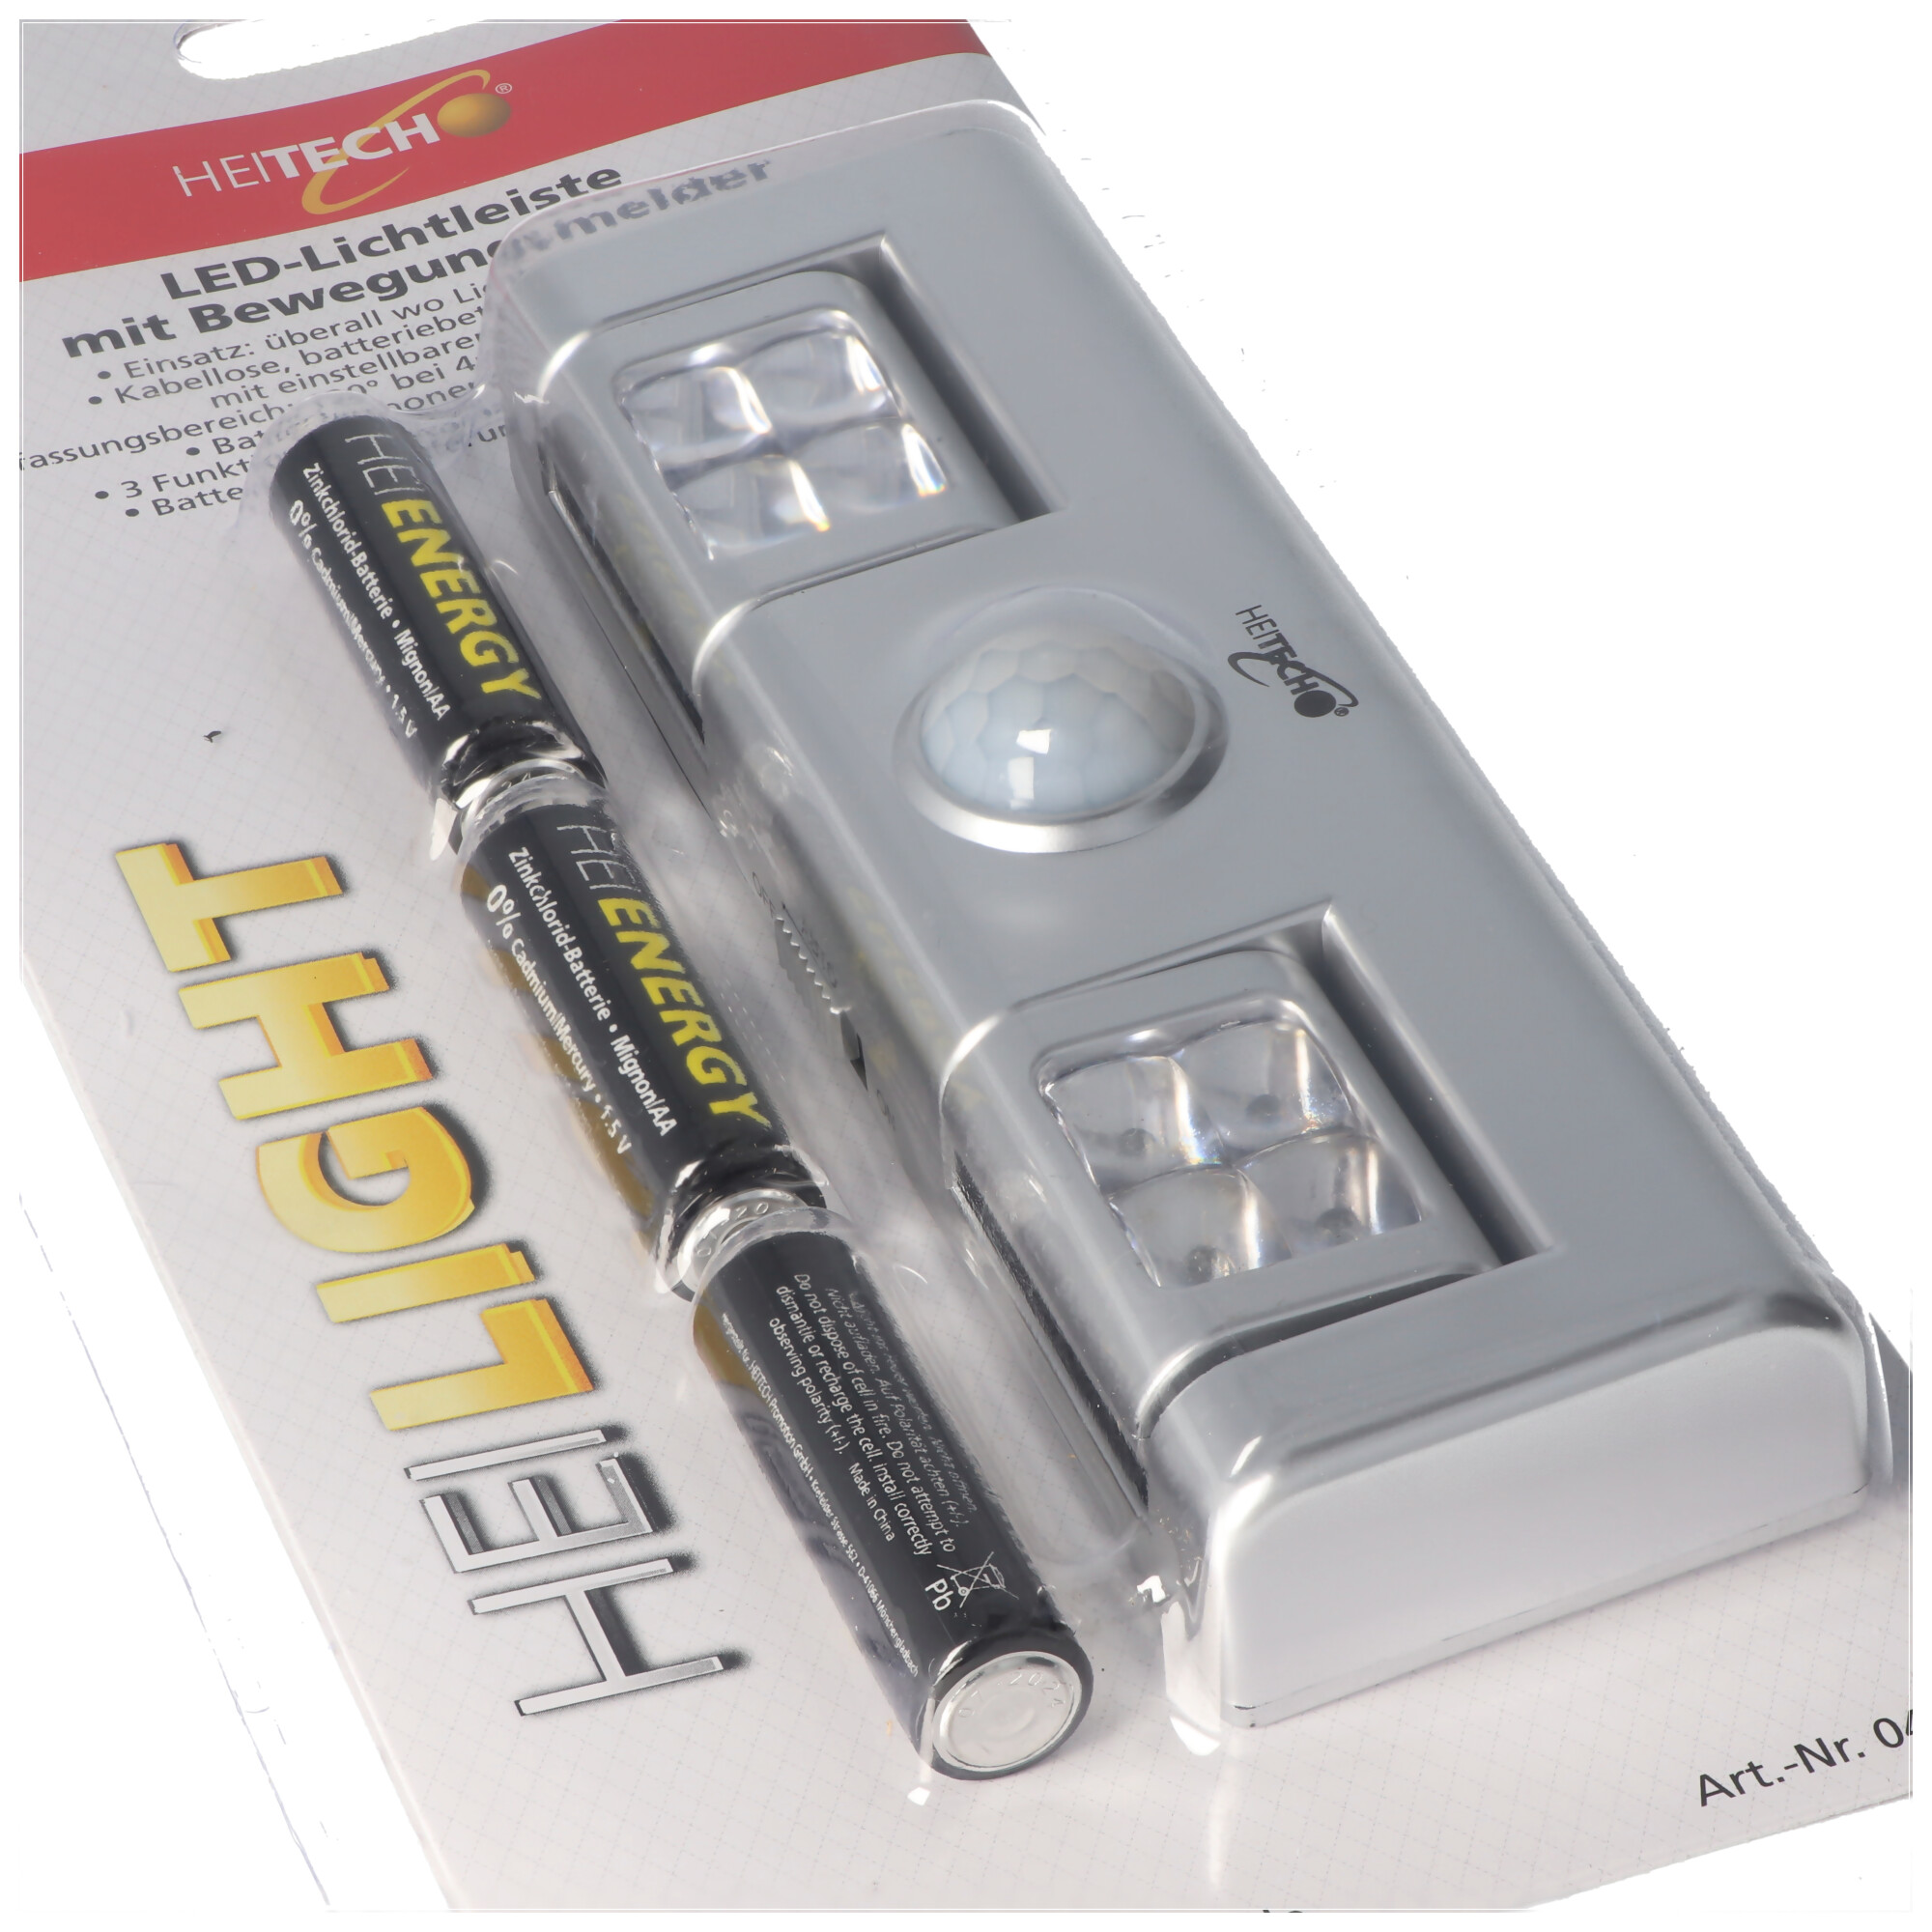 LED-Lichtleiste mit Bewegungsmelder, batteriebetriebene Lichtleiste,  kabellos, inklusive 3x Mignon AA Batterien